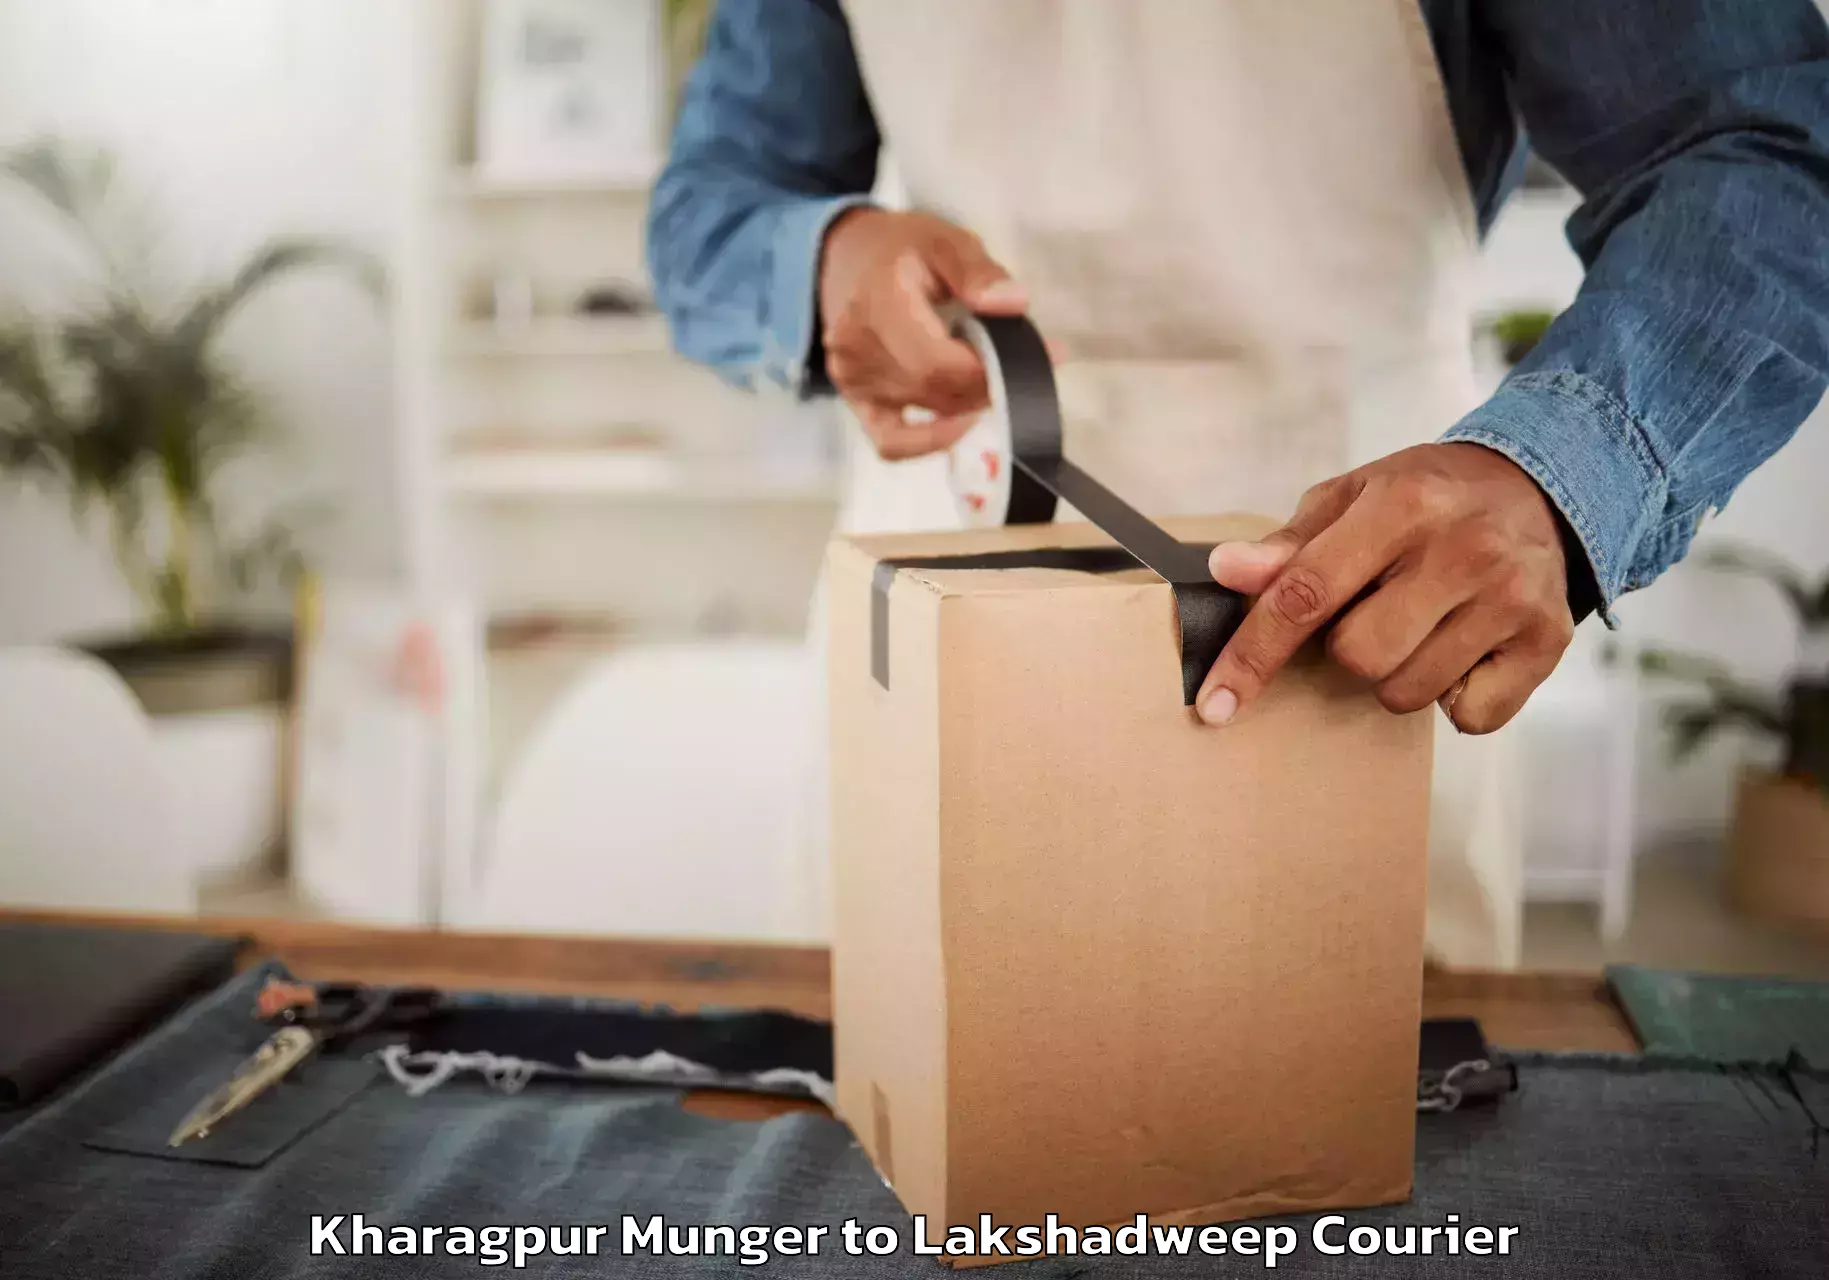 Furniture moving assistance Kharagpur Munger to Lakshadweep